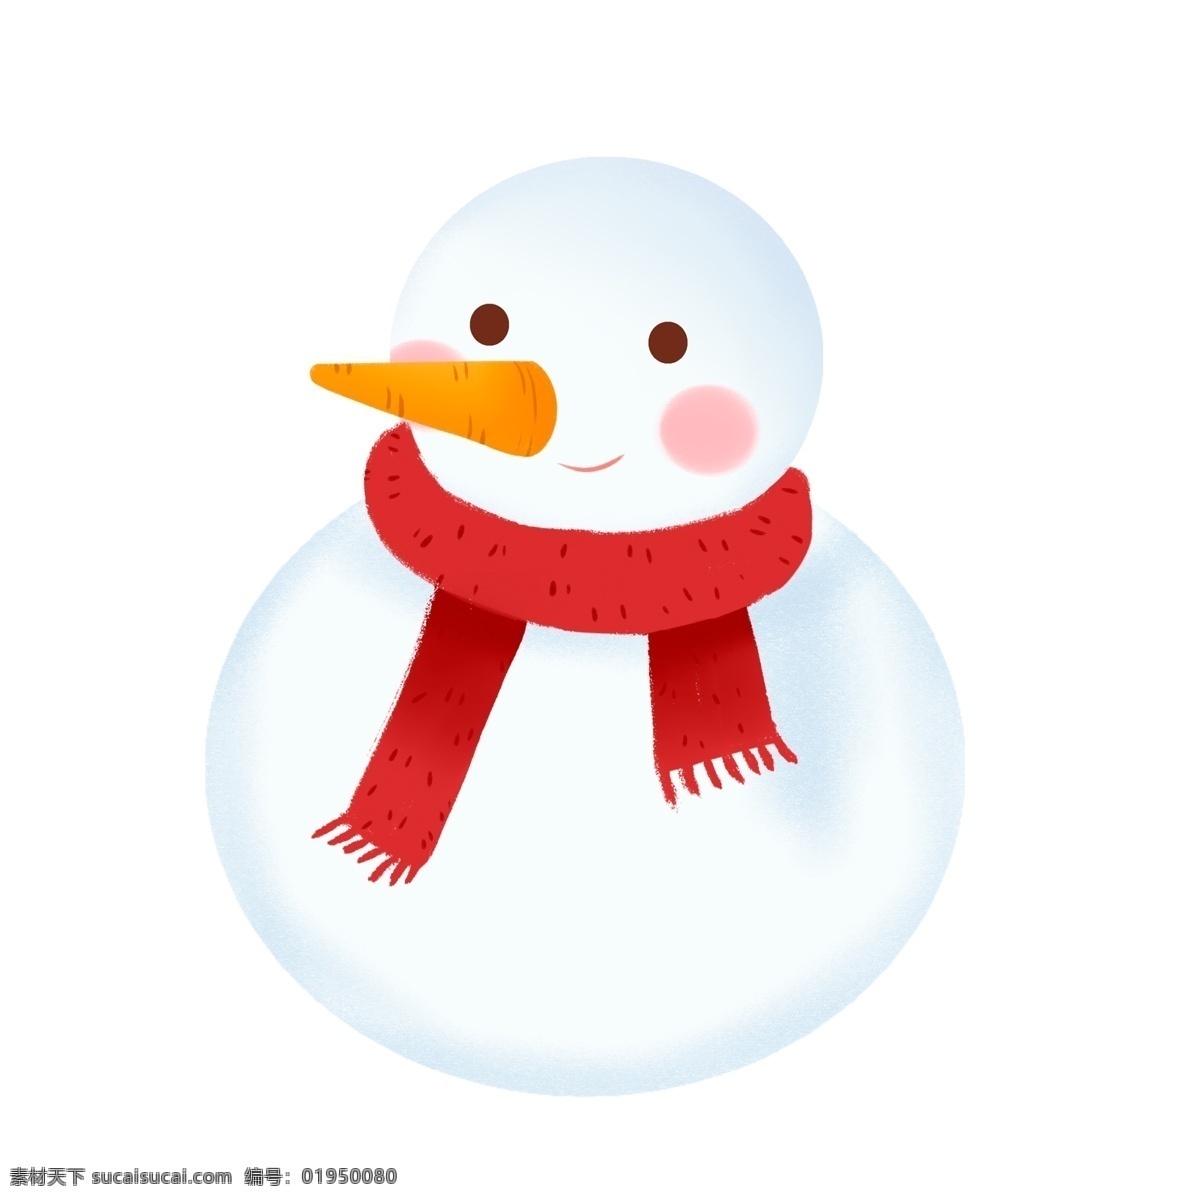 冬季 憨厚 害羞 雪人 商用 元素 表情 插画 围巾 胡萝卜 手绘设计